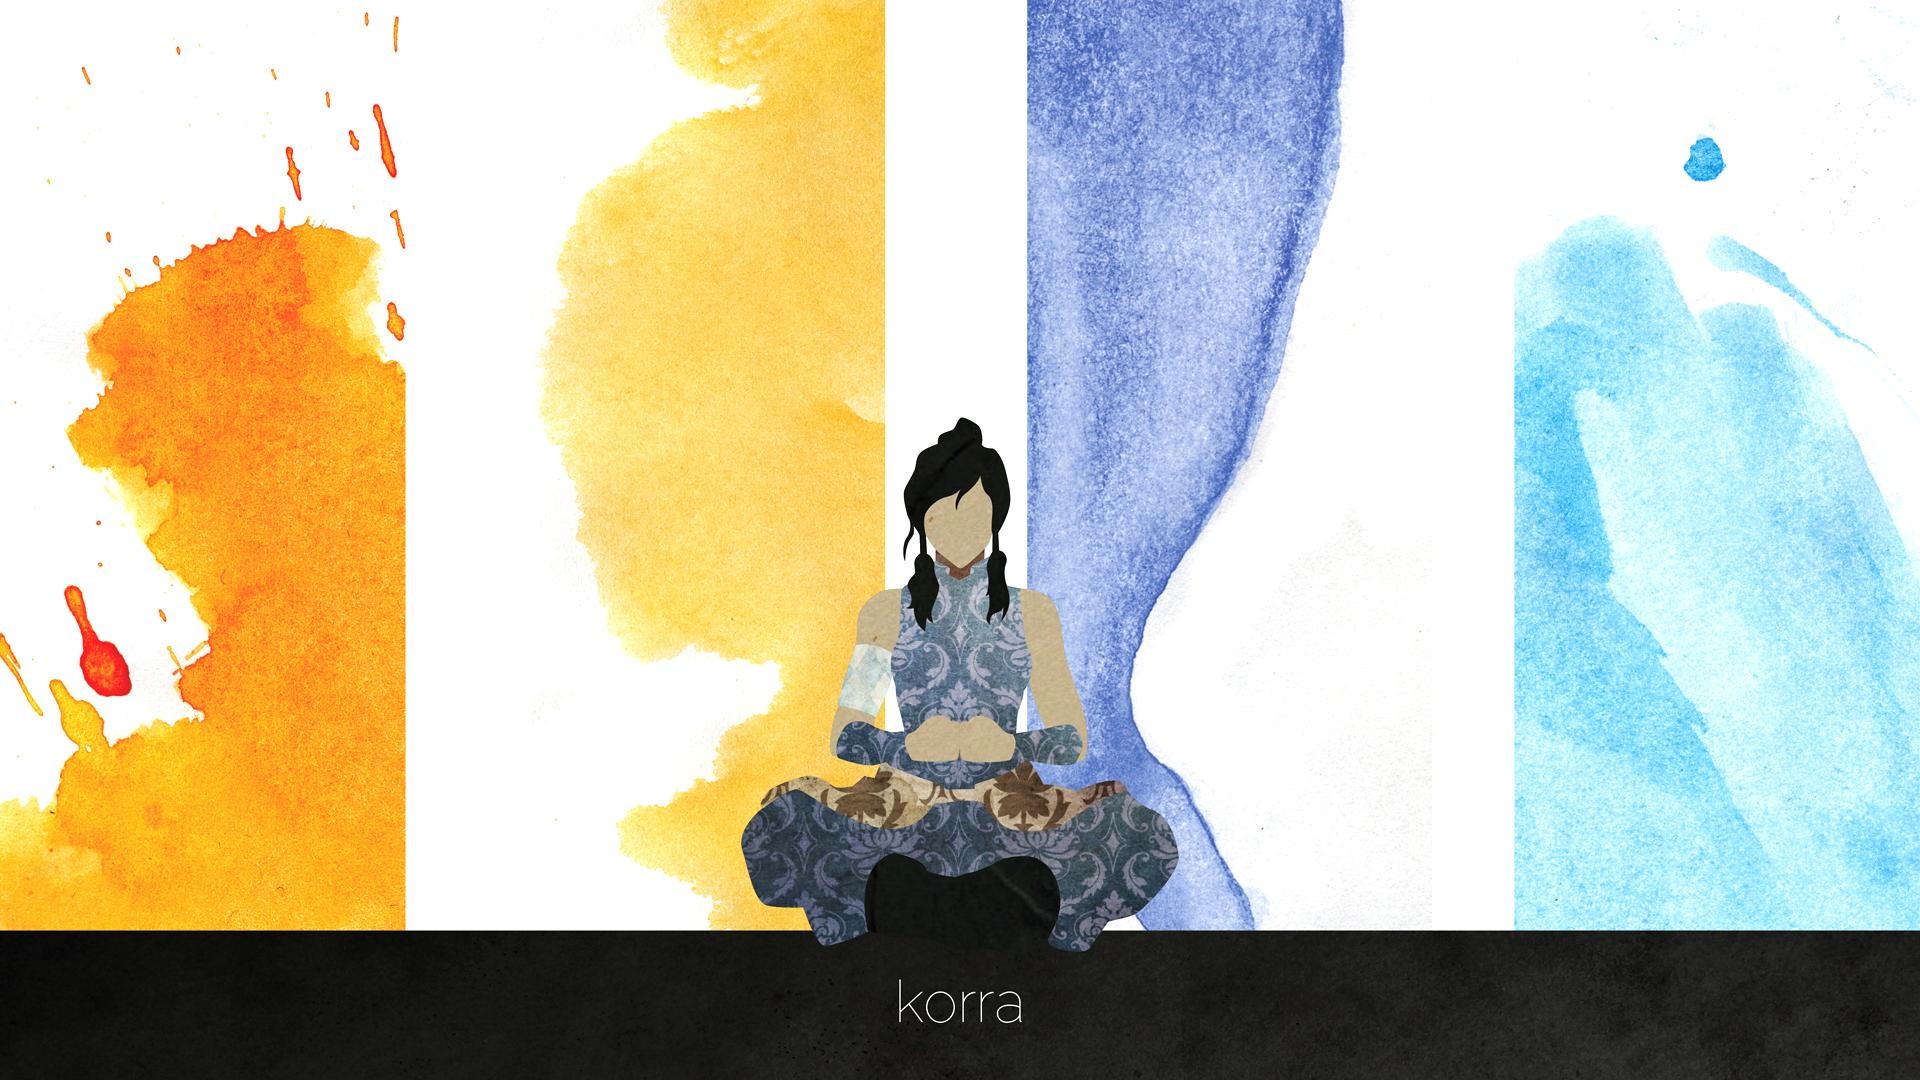 Anime Avatar The Legend Of Korra 1920x1080